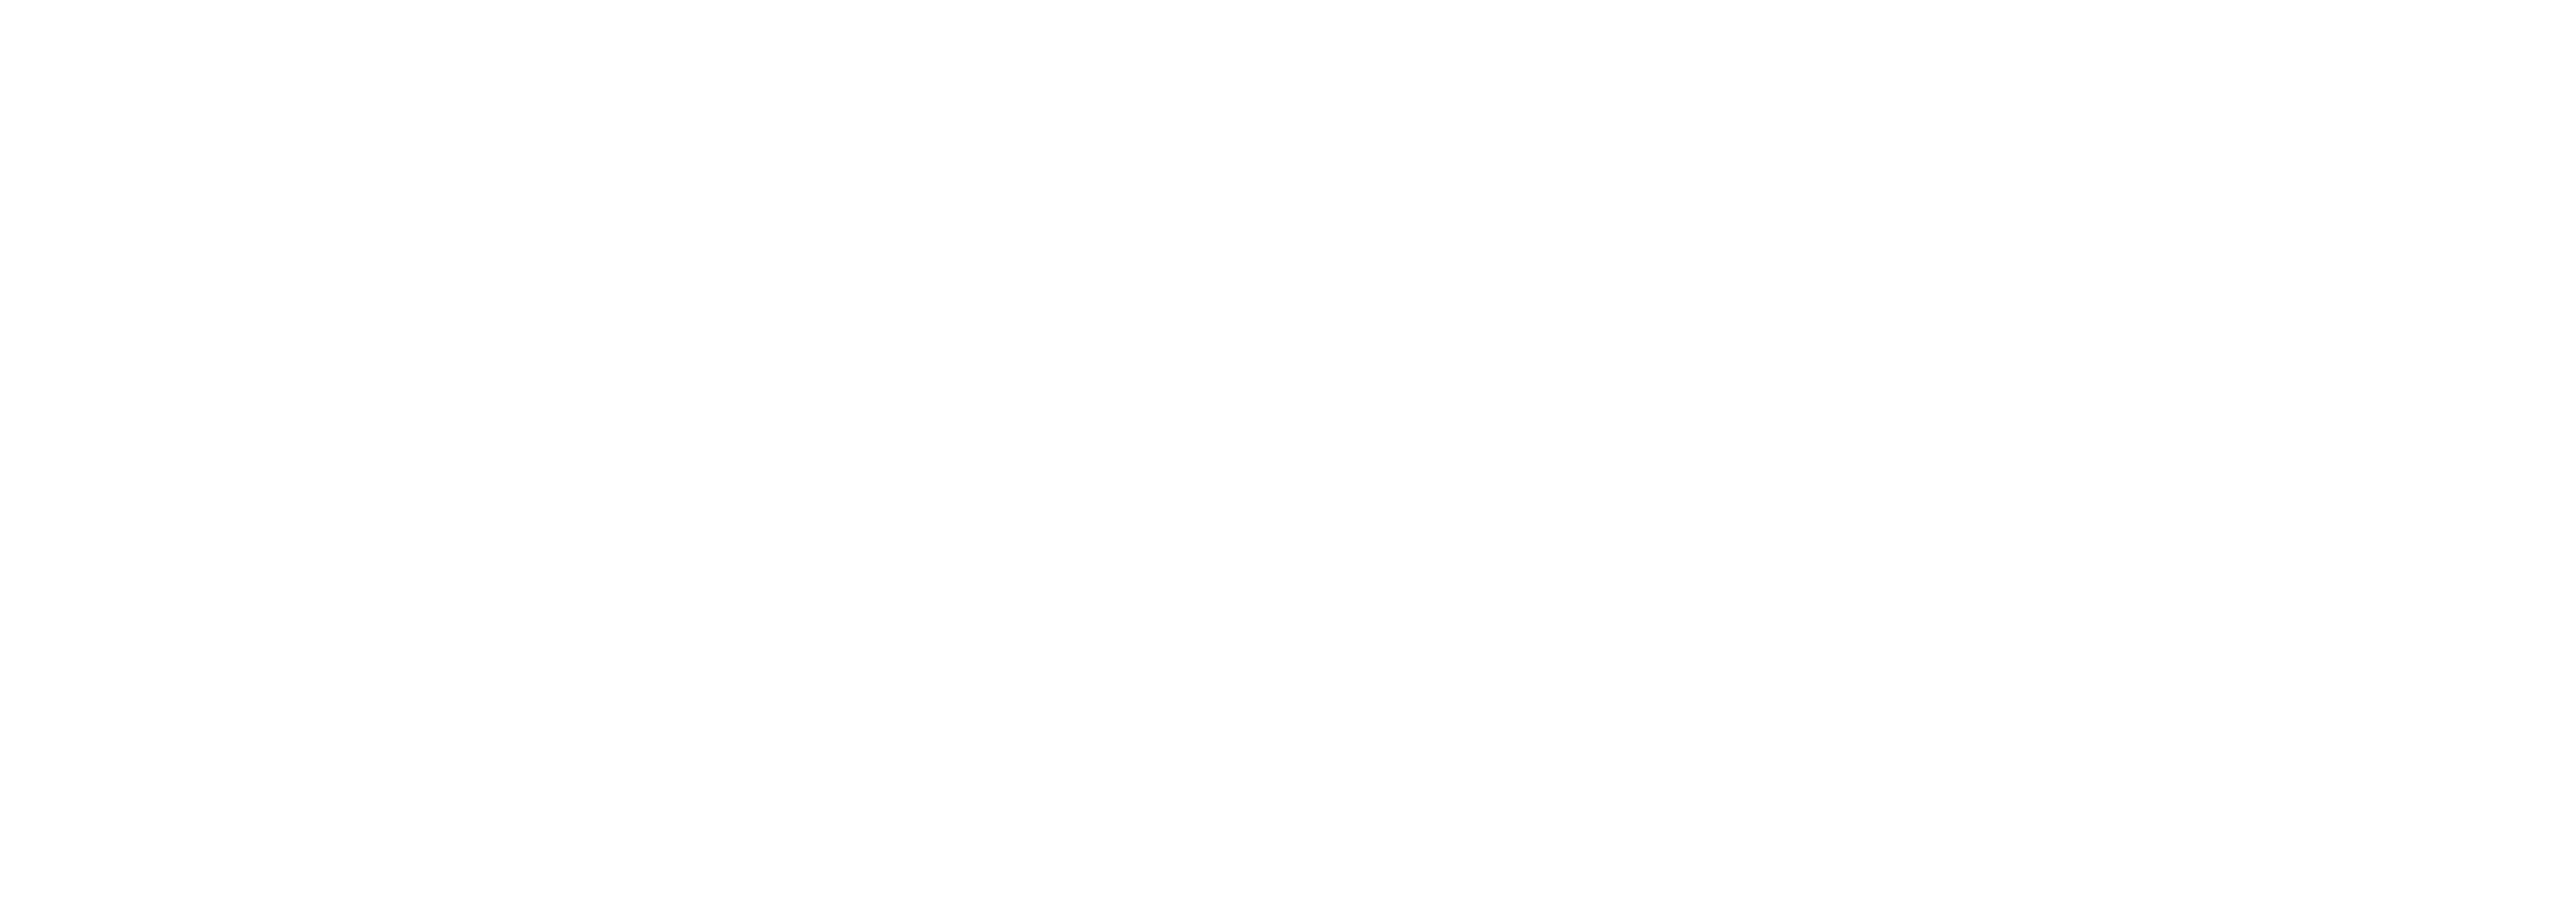 Irina Vasconcelos Official Website